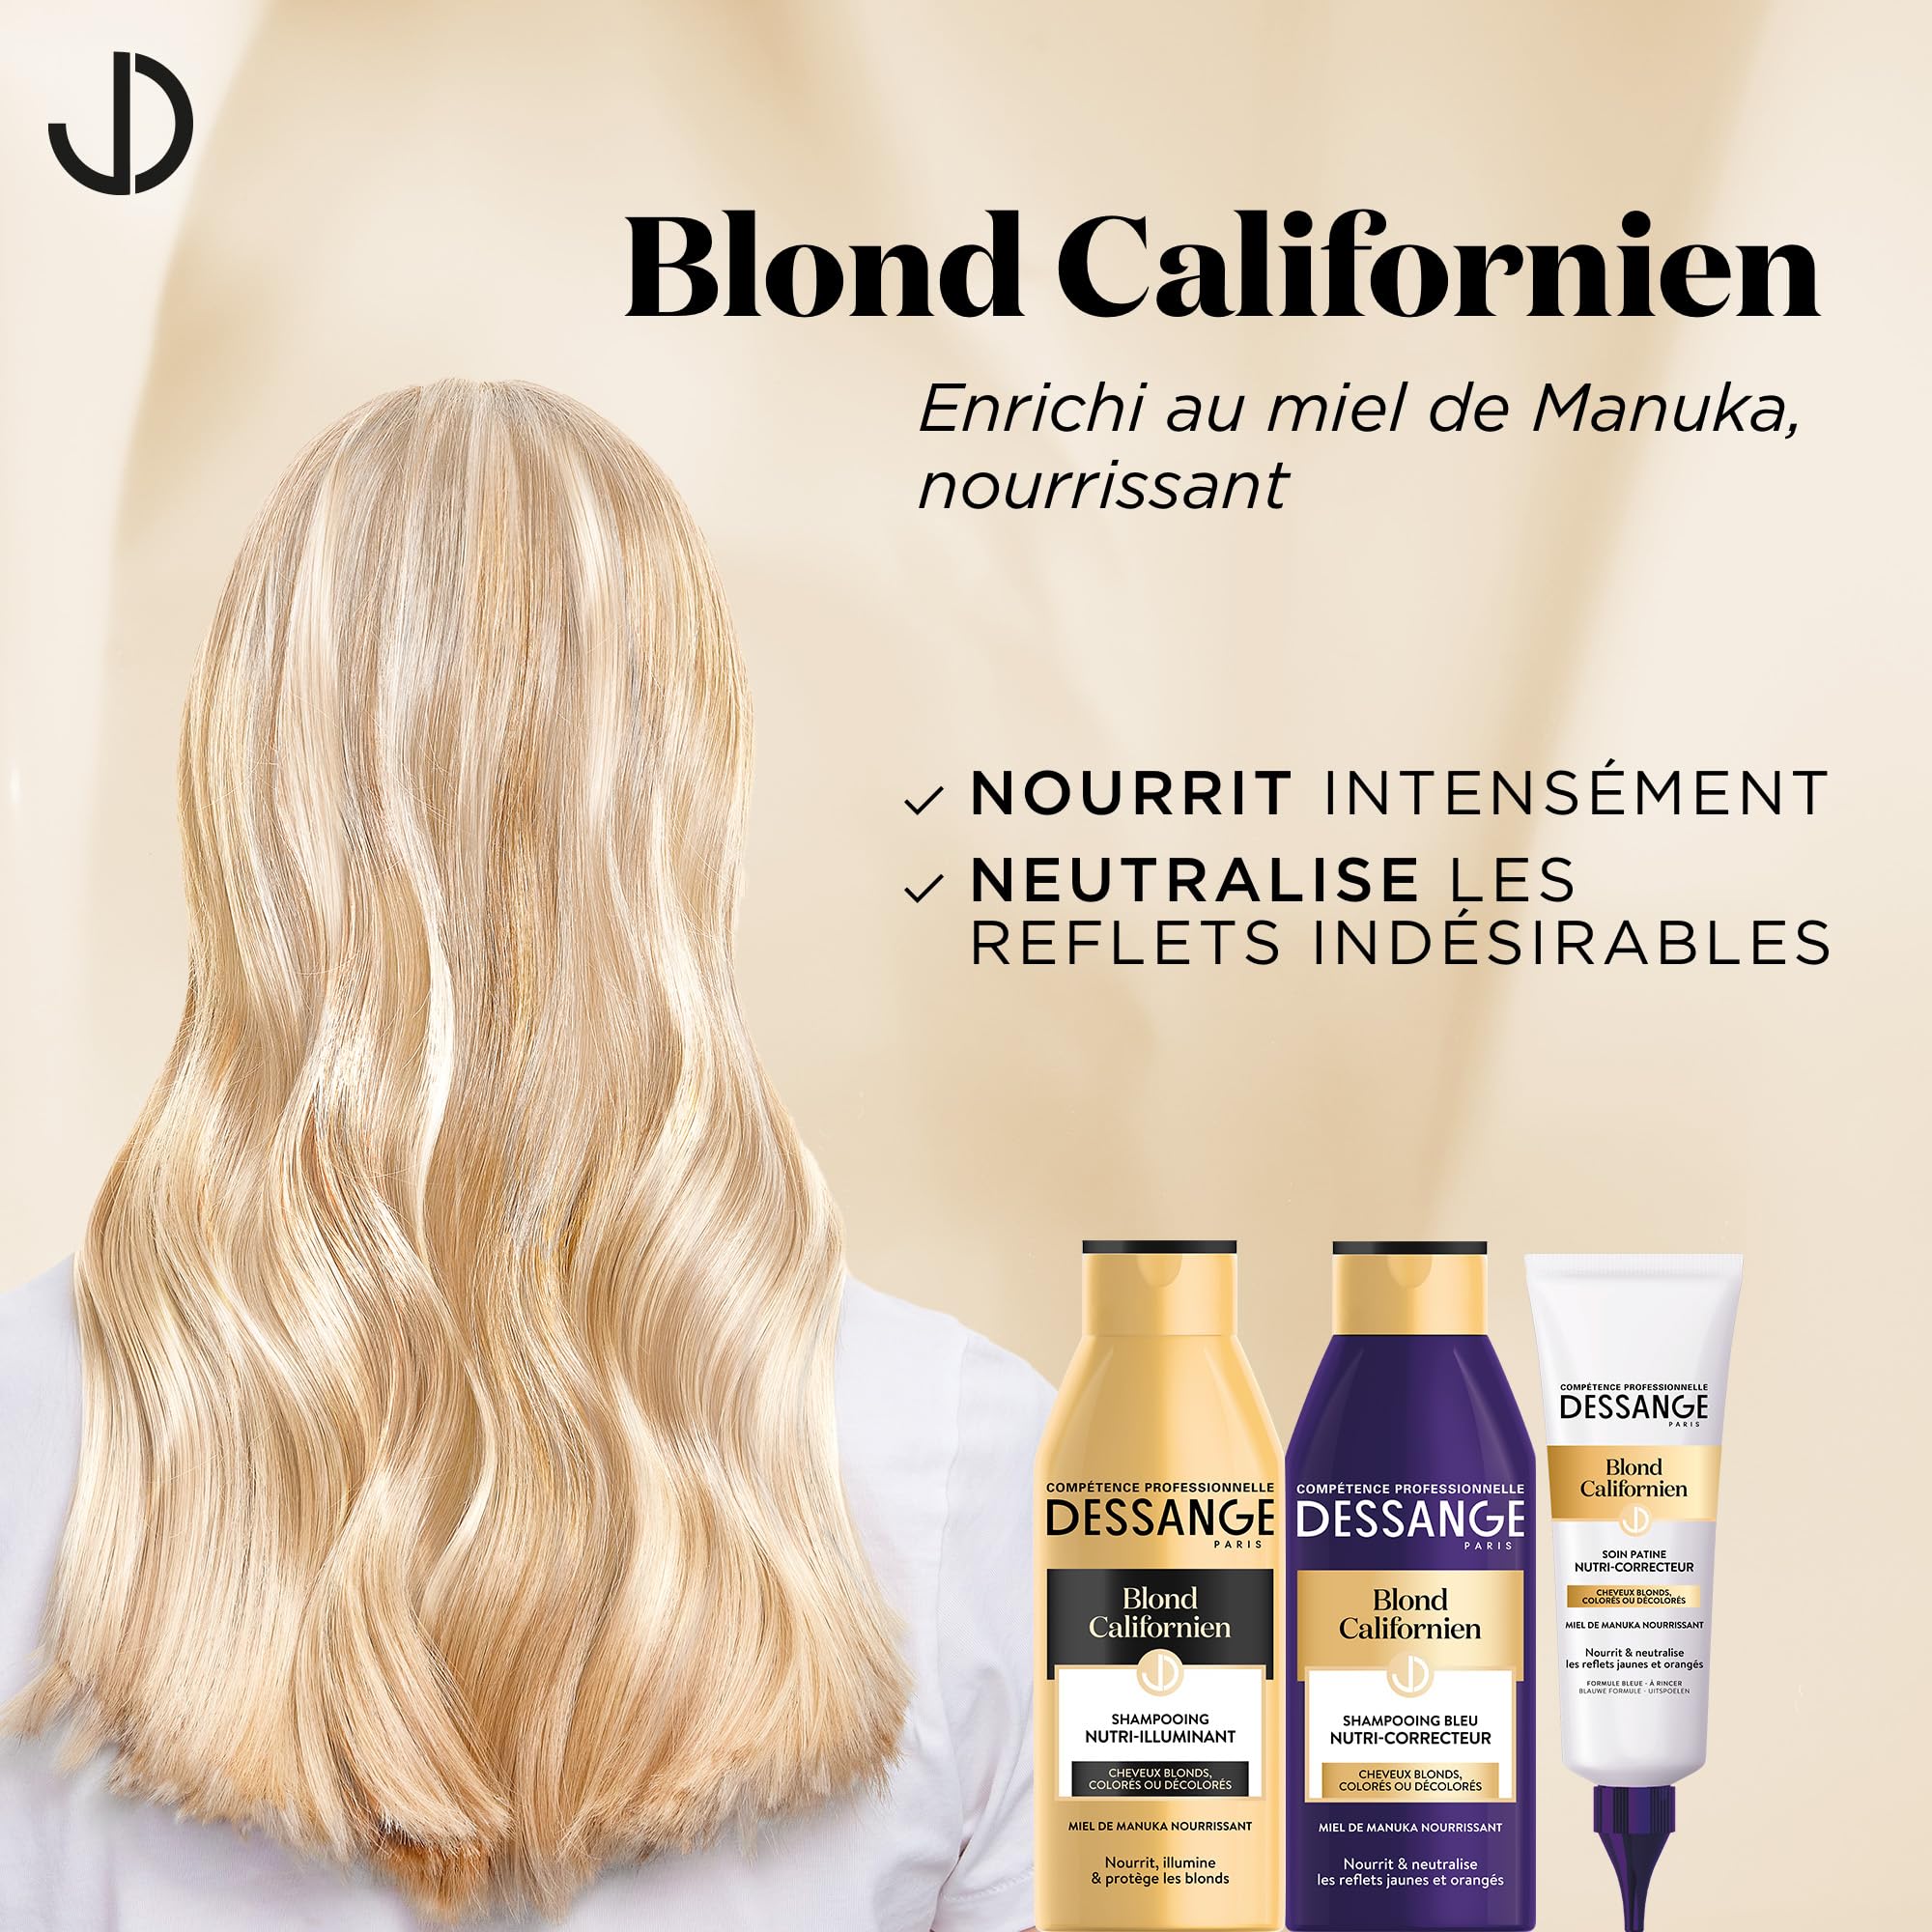 dessange blond californien szampon opinie